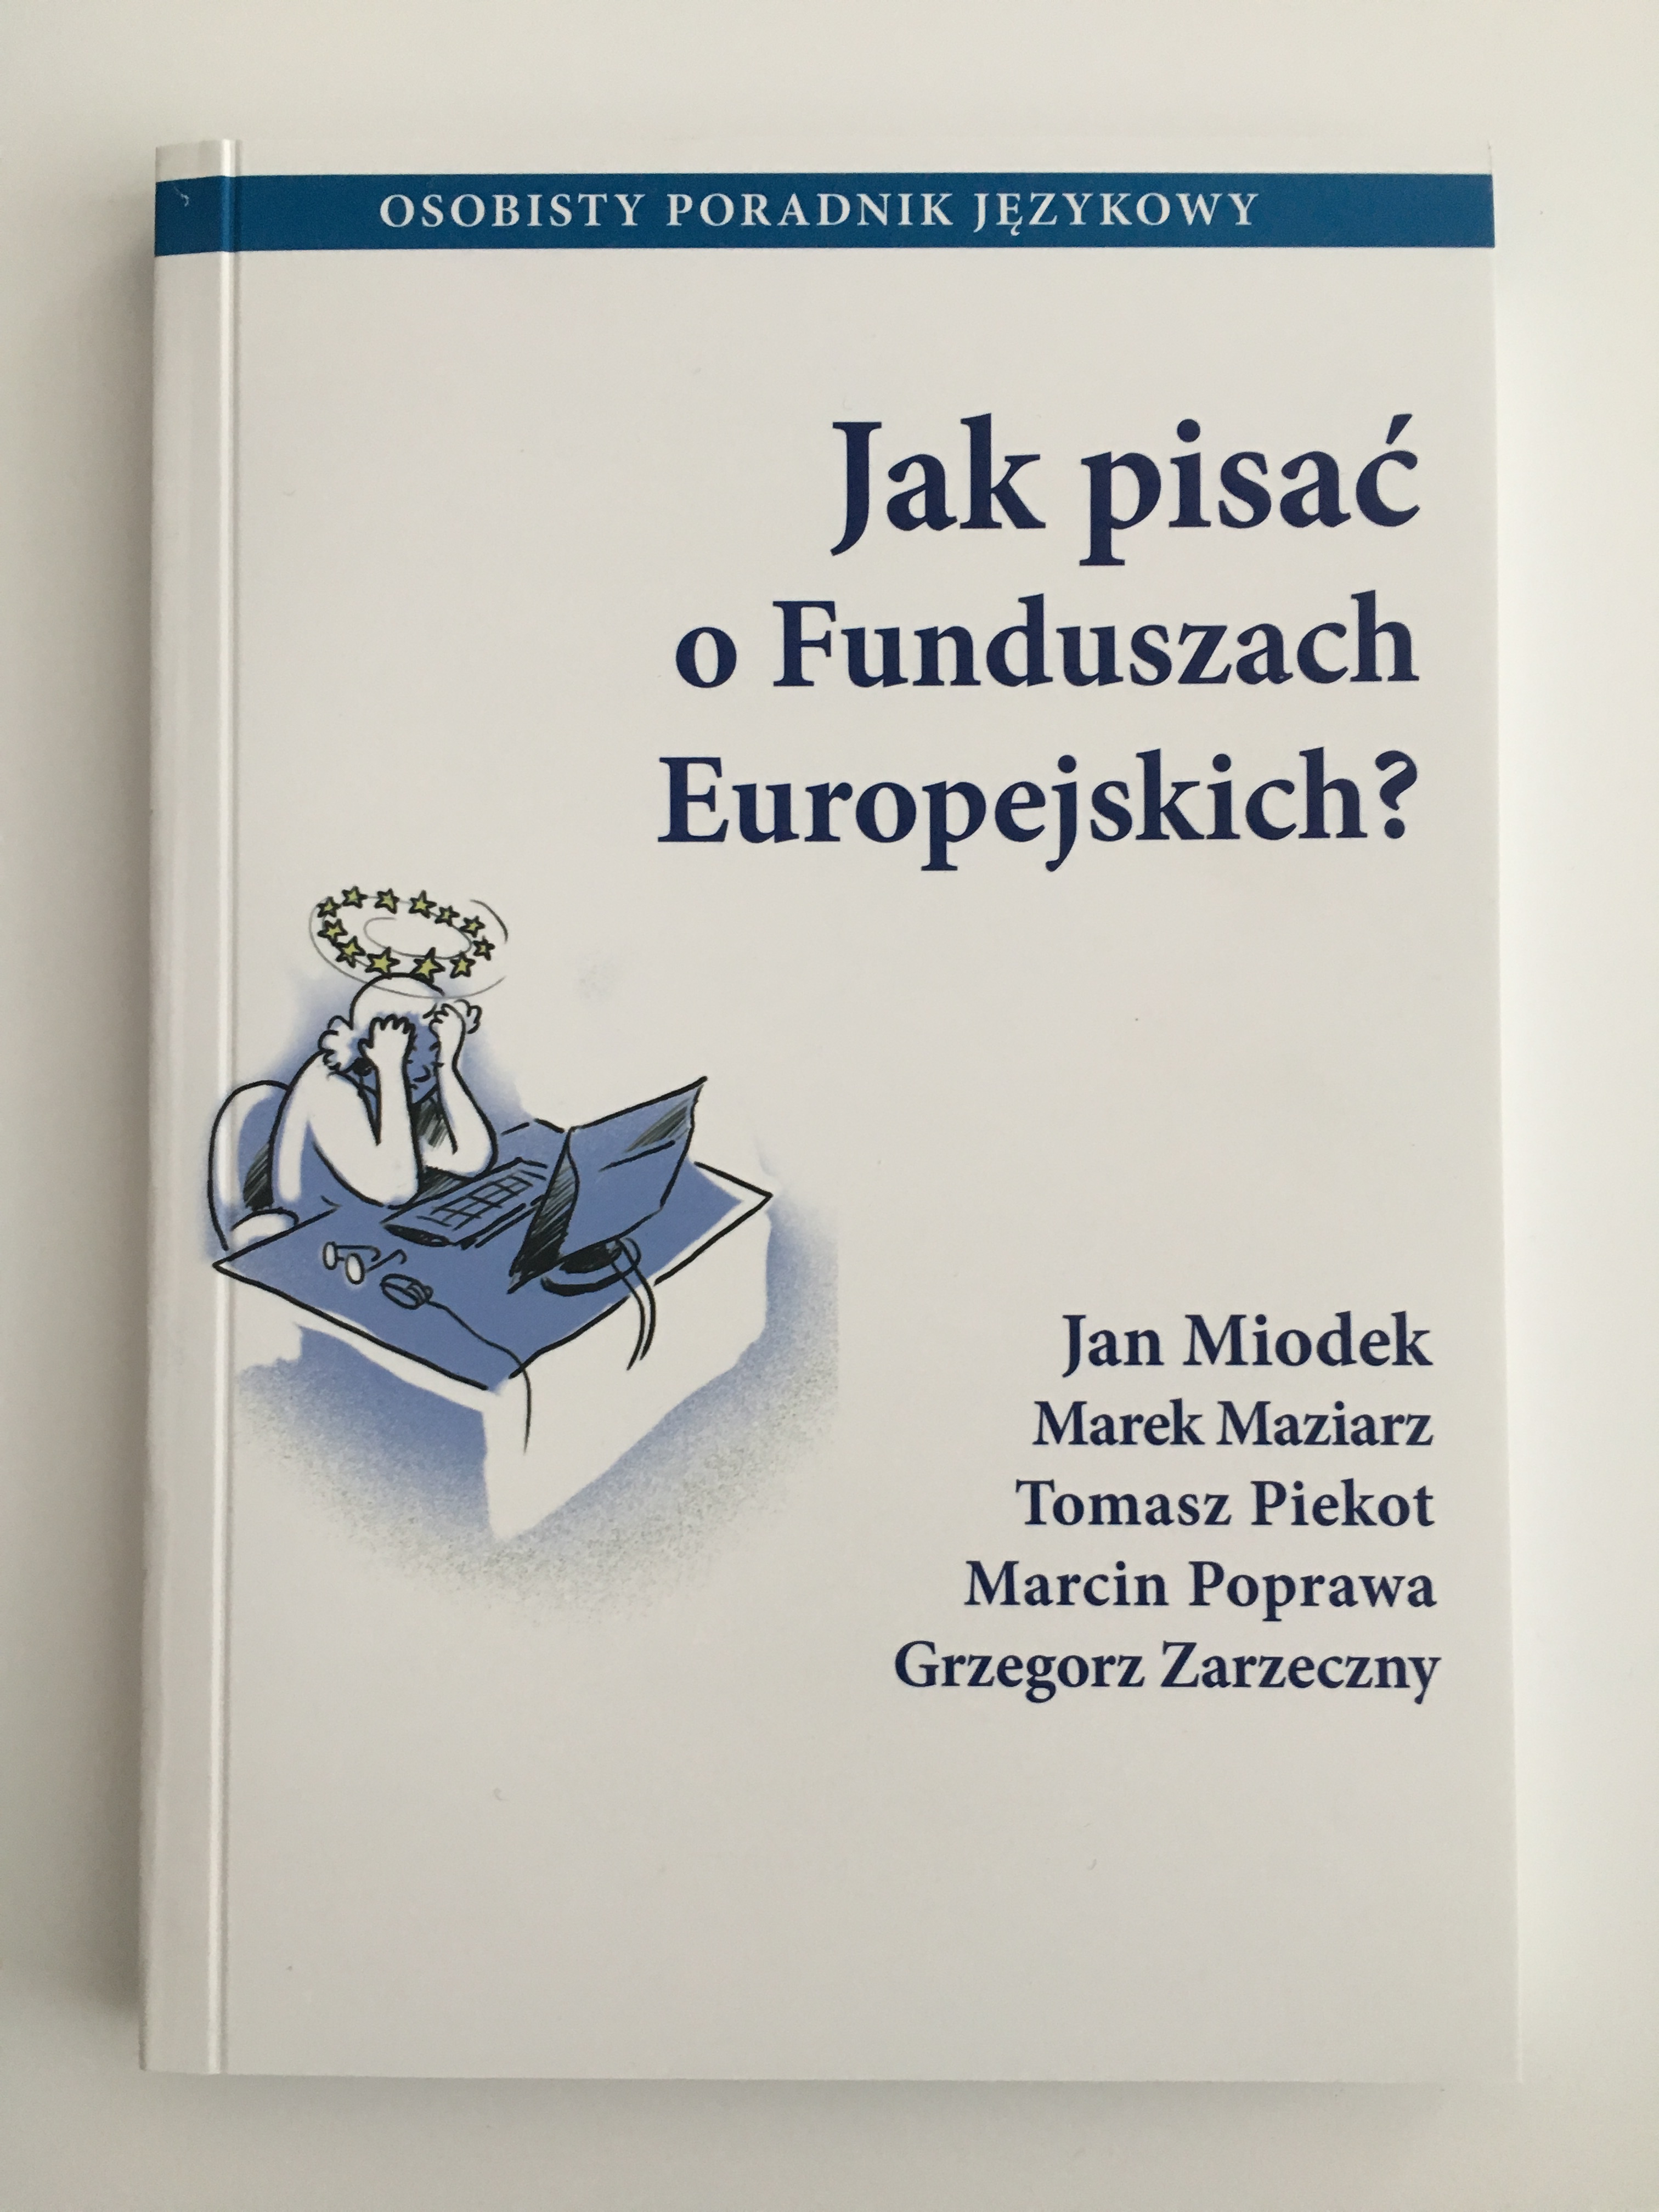 broszura "Jak pisać o Funduszach Europejskich?"